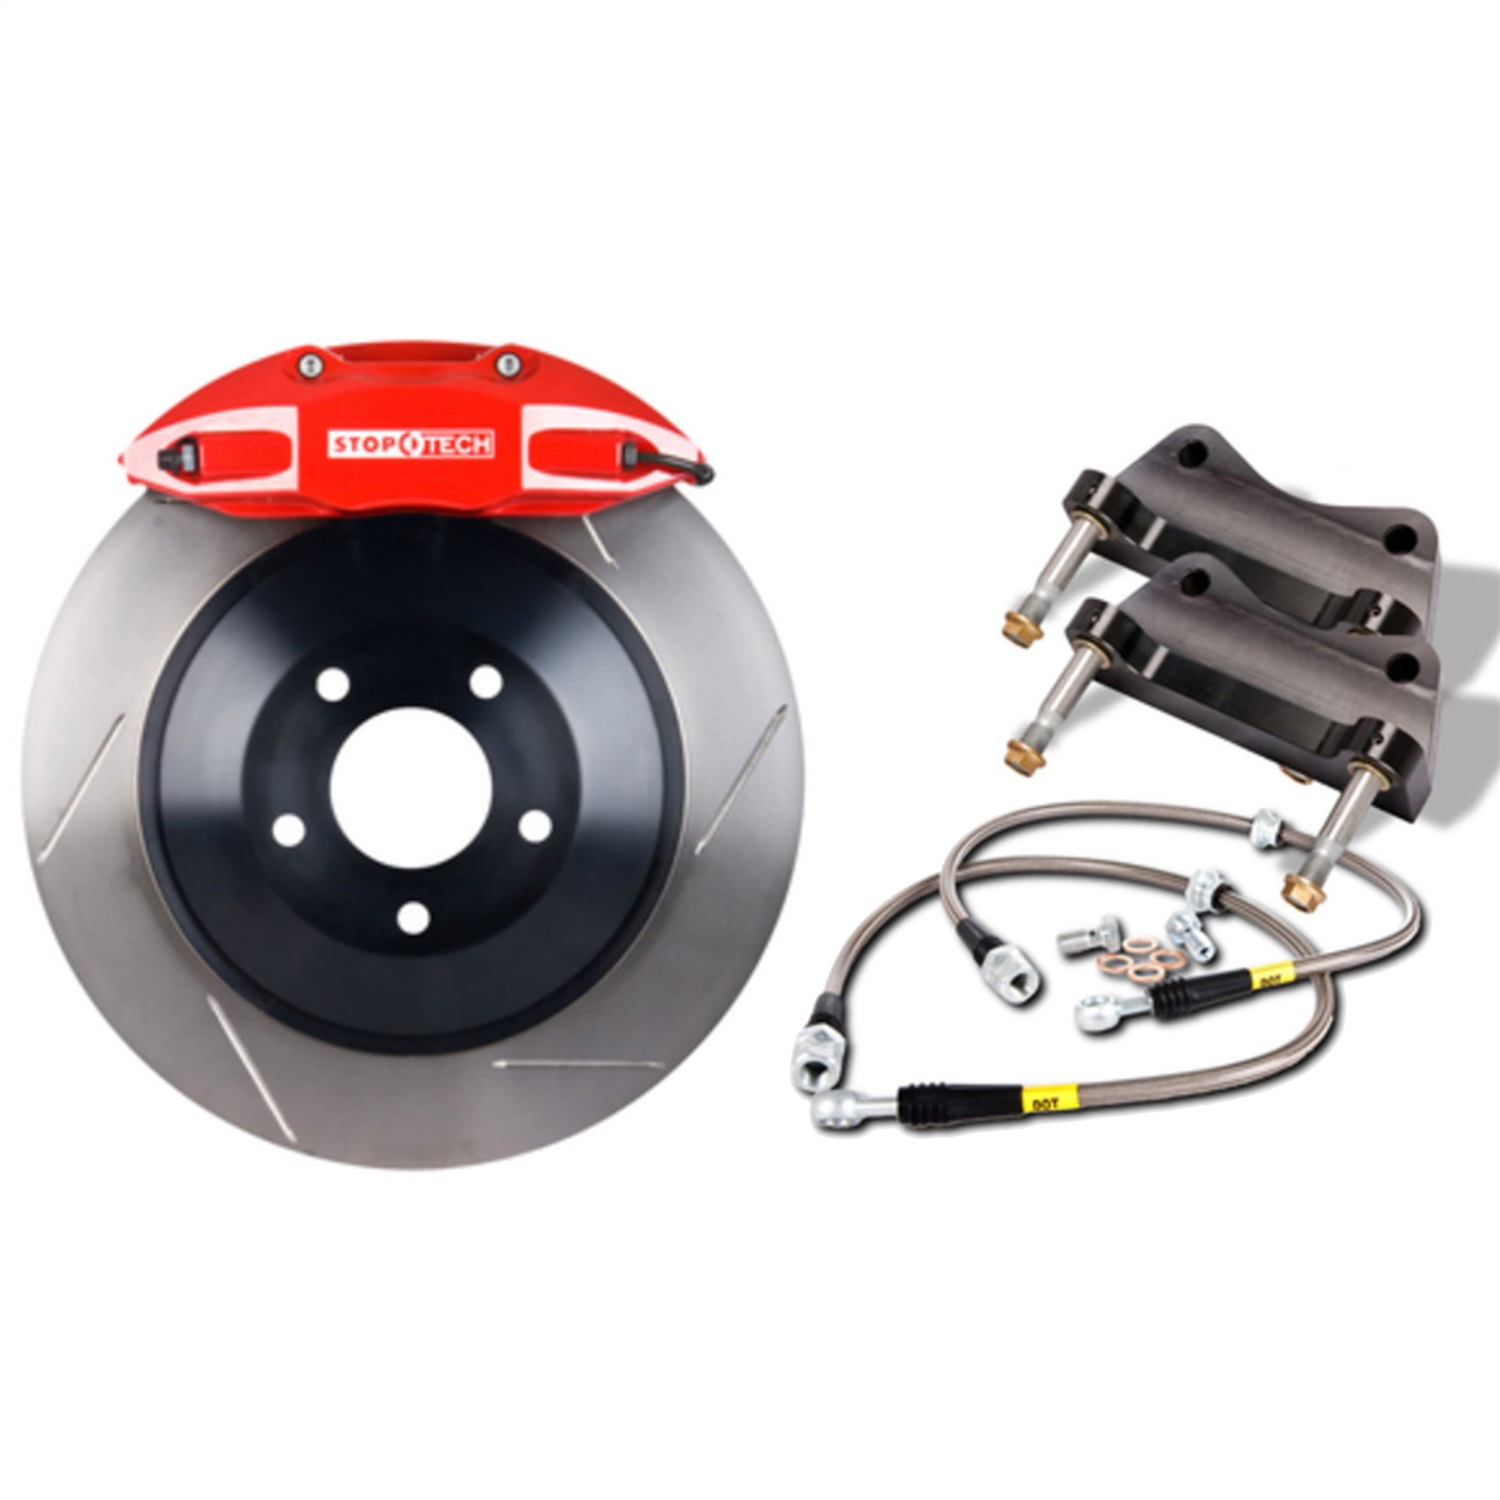 StopTech 82.895.5N00.71 Big Brake Kit w/1 Piece Rotor